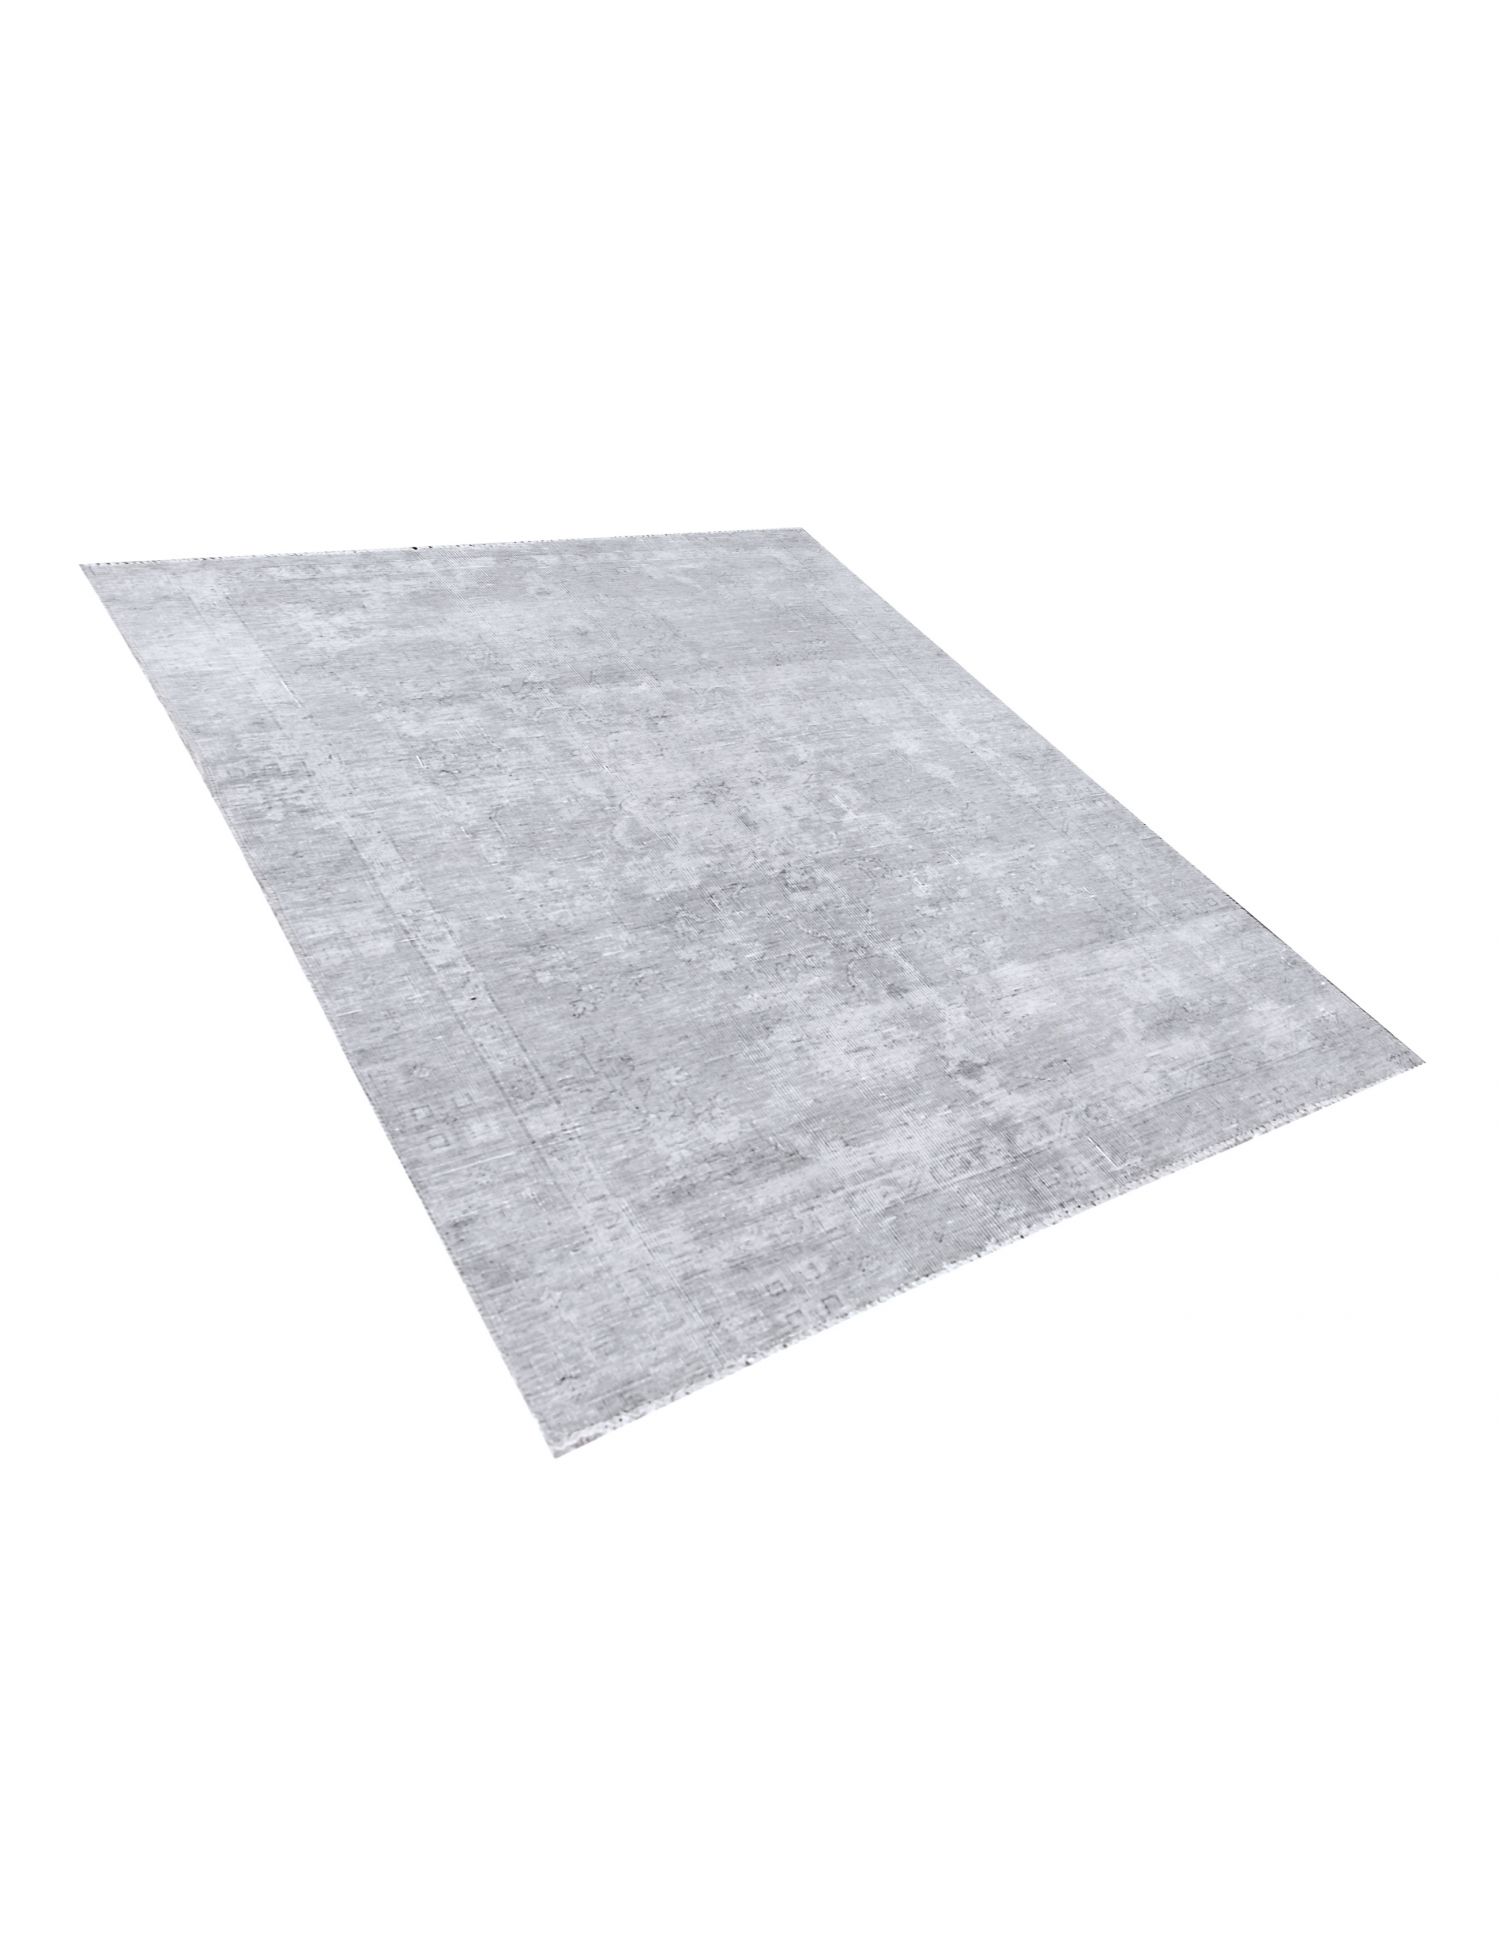 Persischer vintage teppich  grau <br/>179 x 129 cm